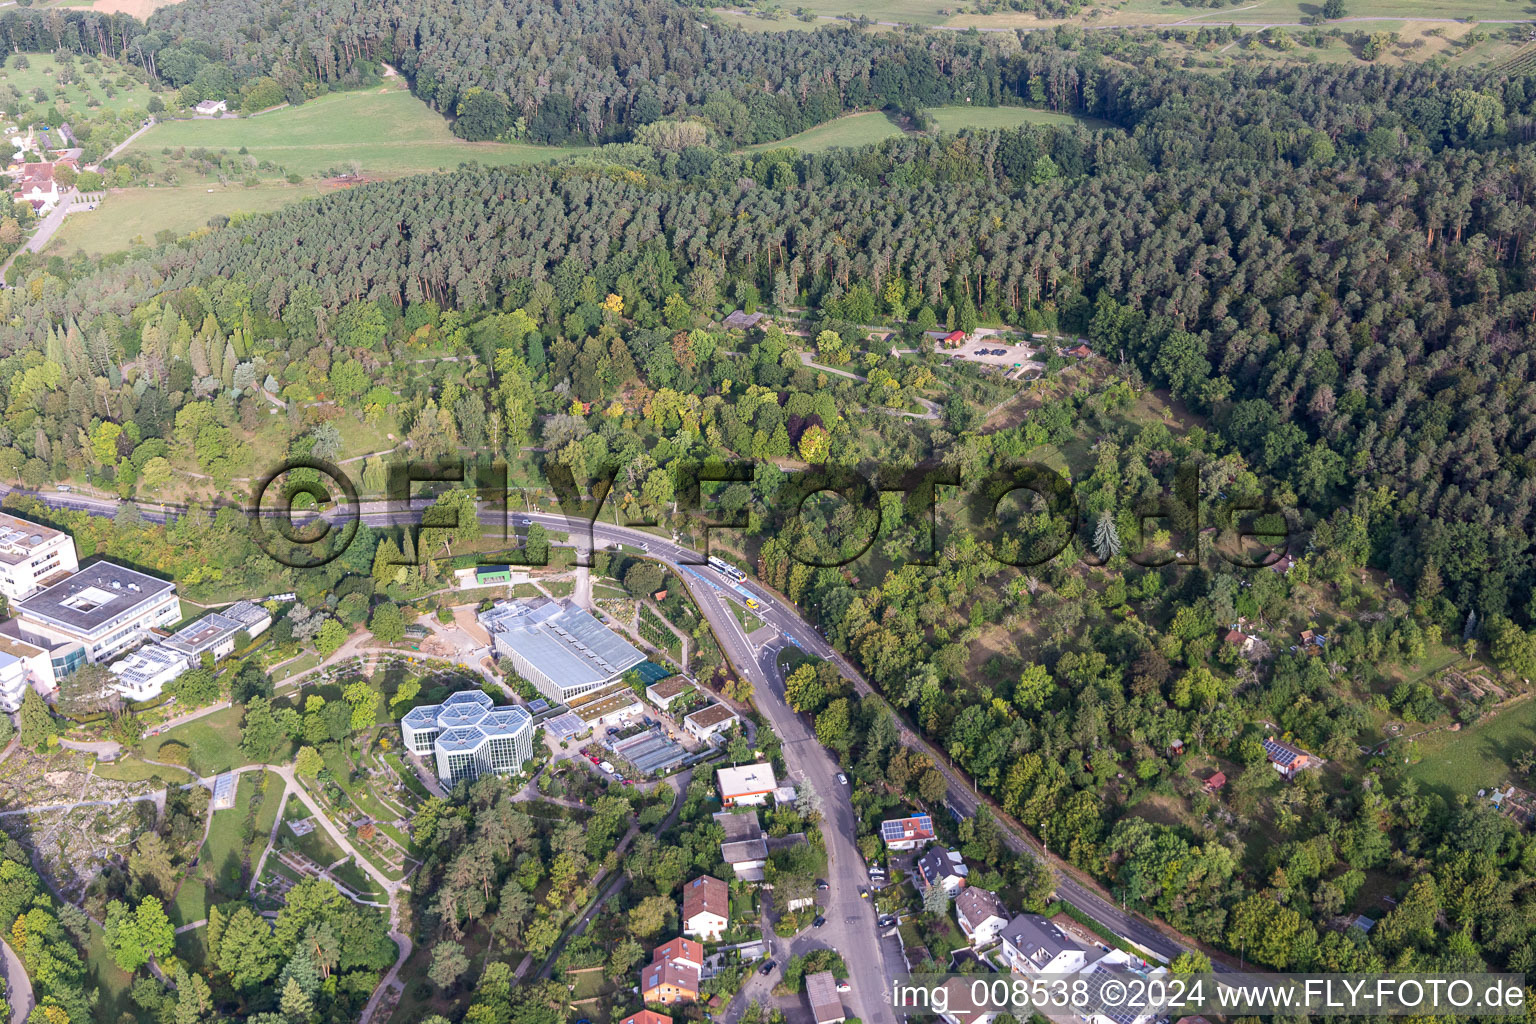 Photographie aérienne de Parc en terrasses du Jardin Botanique, Tropicarium et Arboretum de l'Université Tübingen à Tübingen dans le département Bade-Wurtemberg, Allemagne